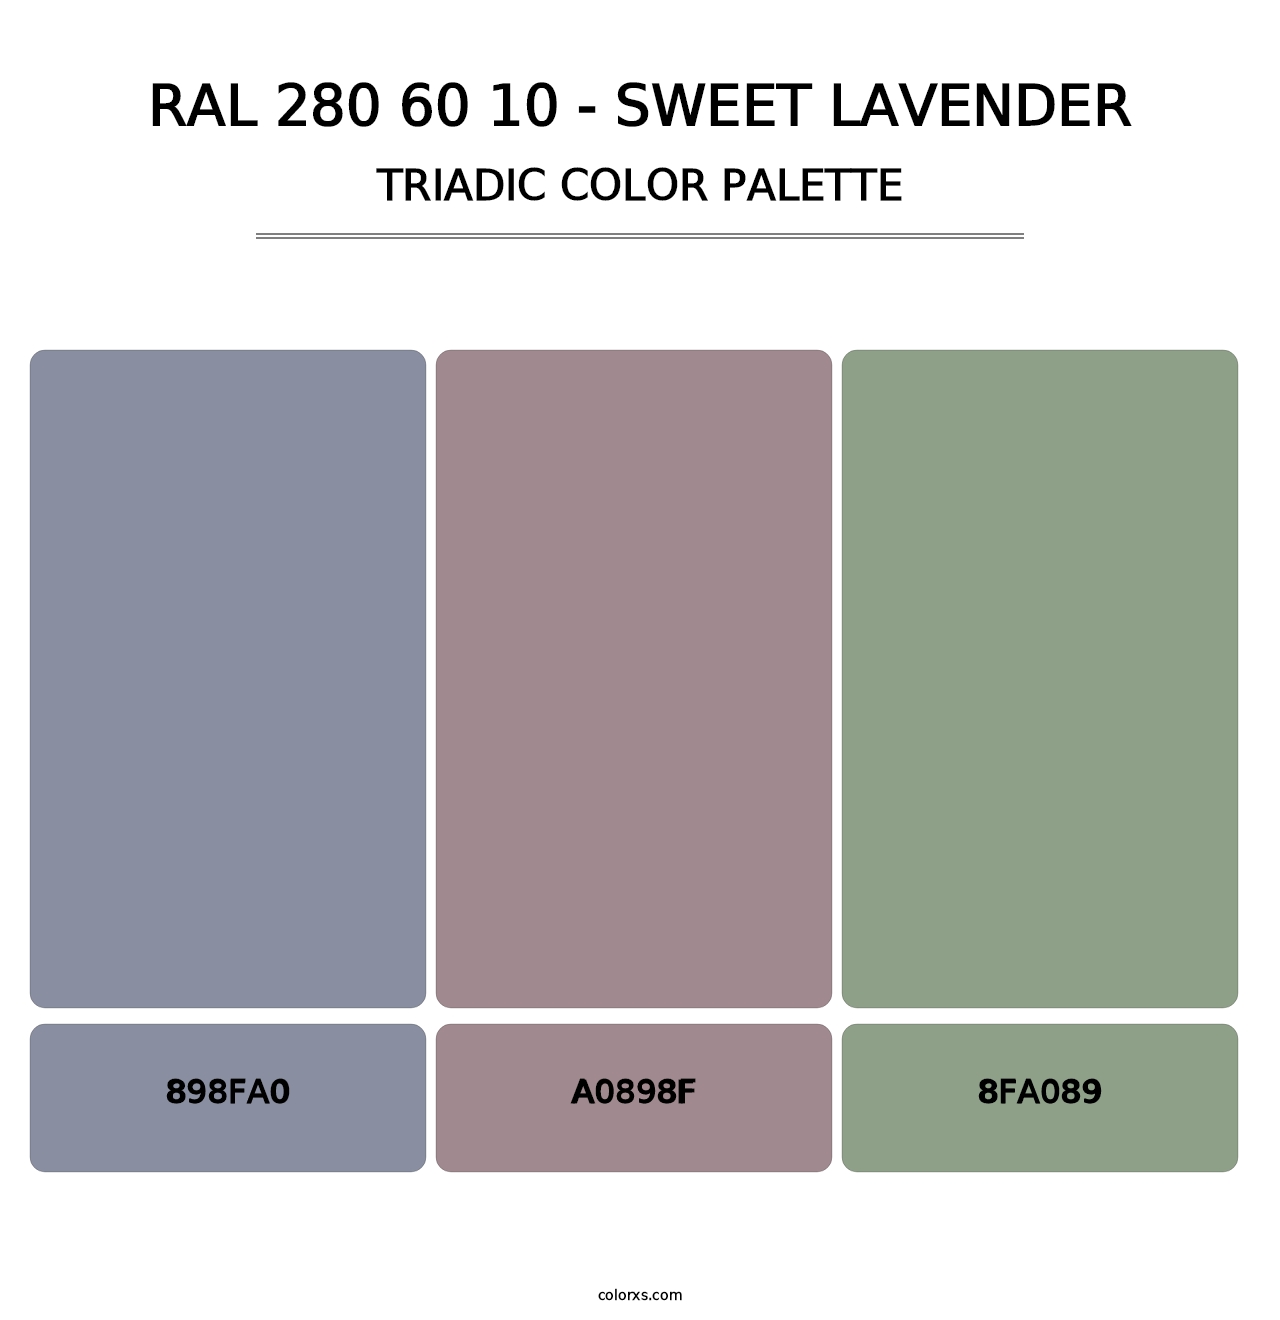 RAL 280 60 10 - Sweet Lavender - Triadic Color Palette